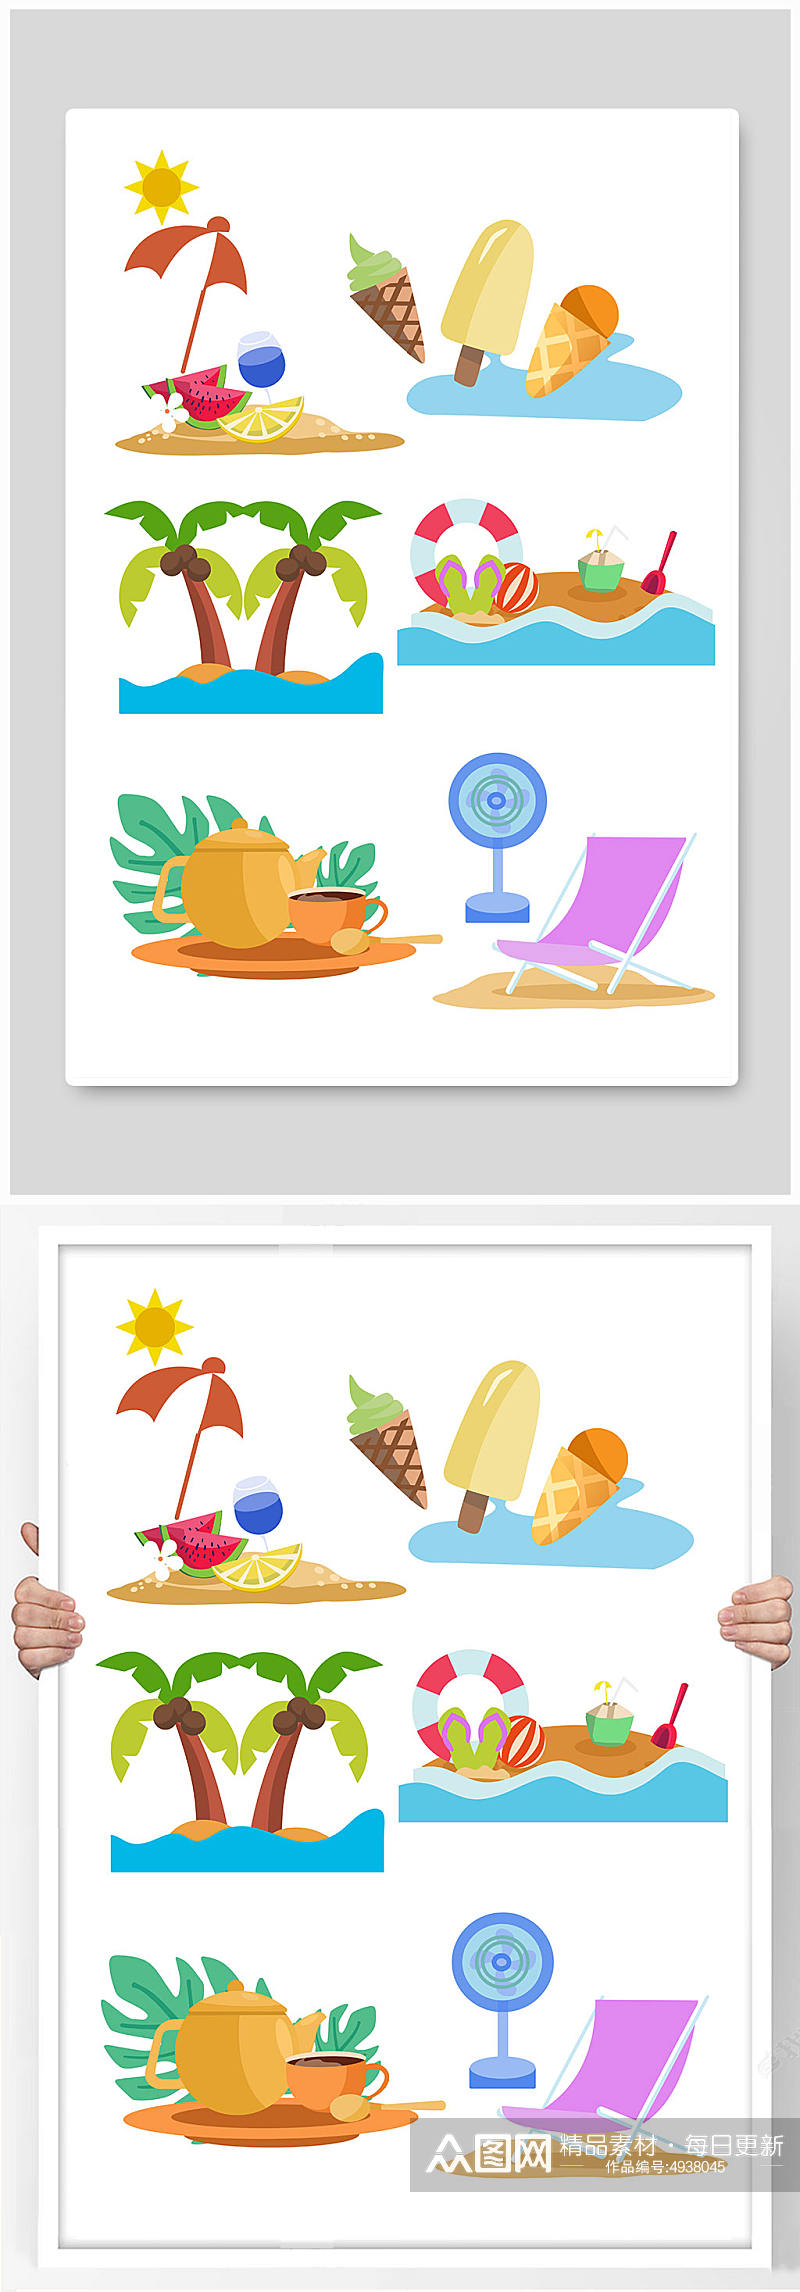 夏日沙滩椅椰树大暑节气夏季元素插画素材